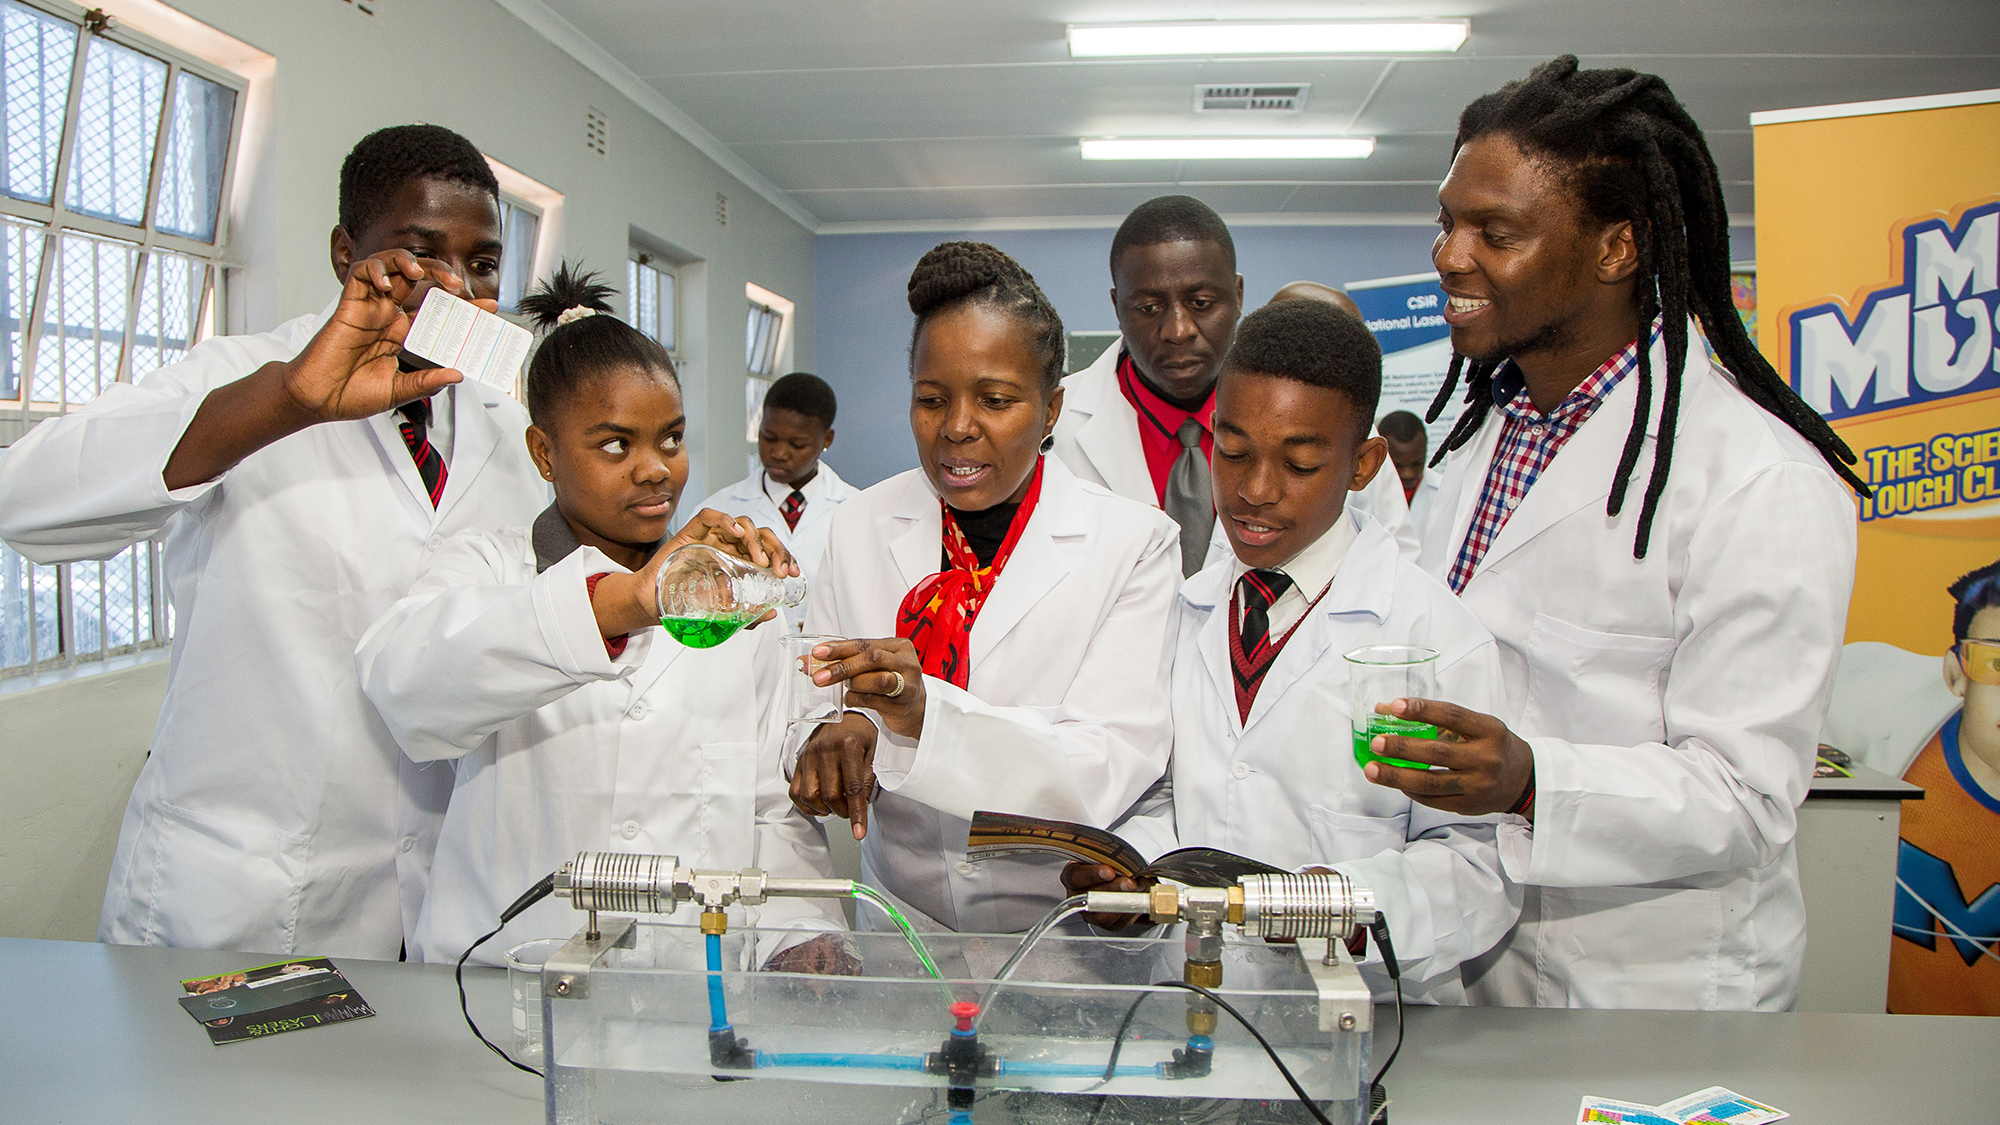 SC Johnson kurumsal bağış programımızın bir parçası olarak Güney Afrika’da bir bilim laboratuvarı bağışladı